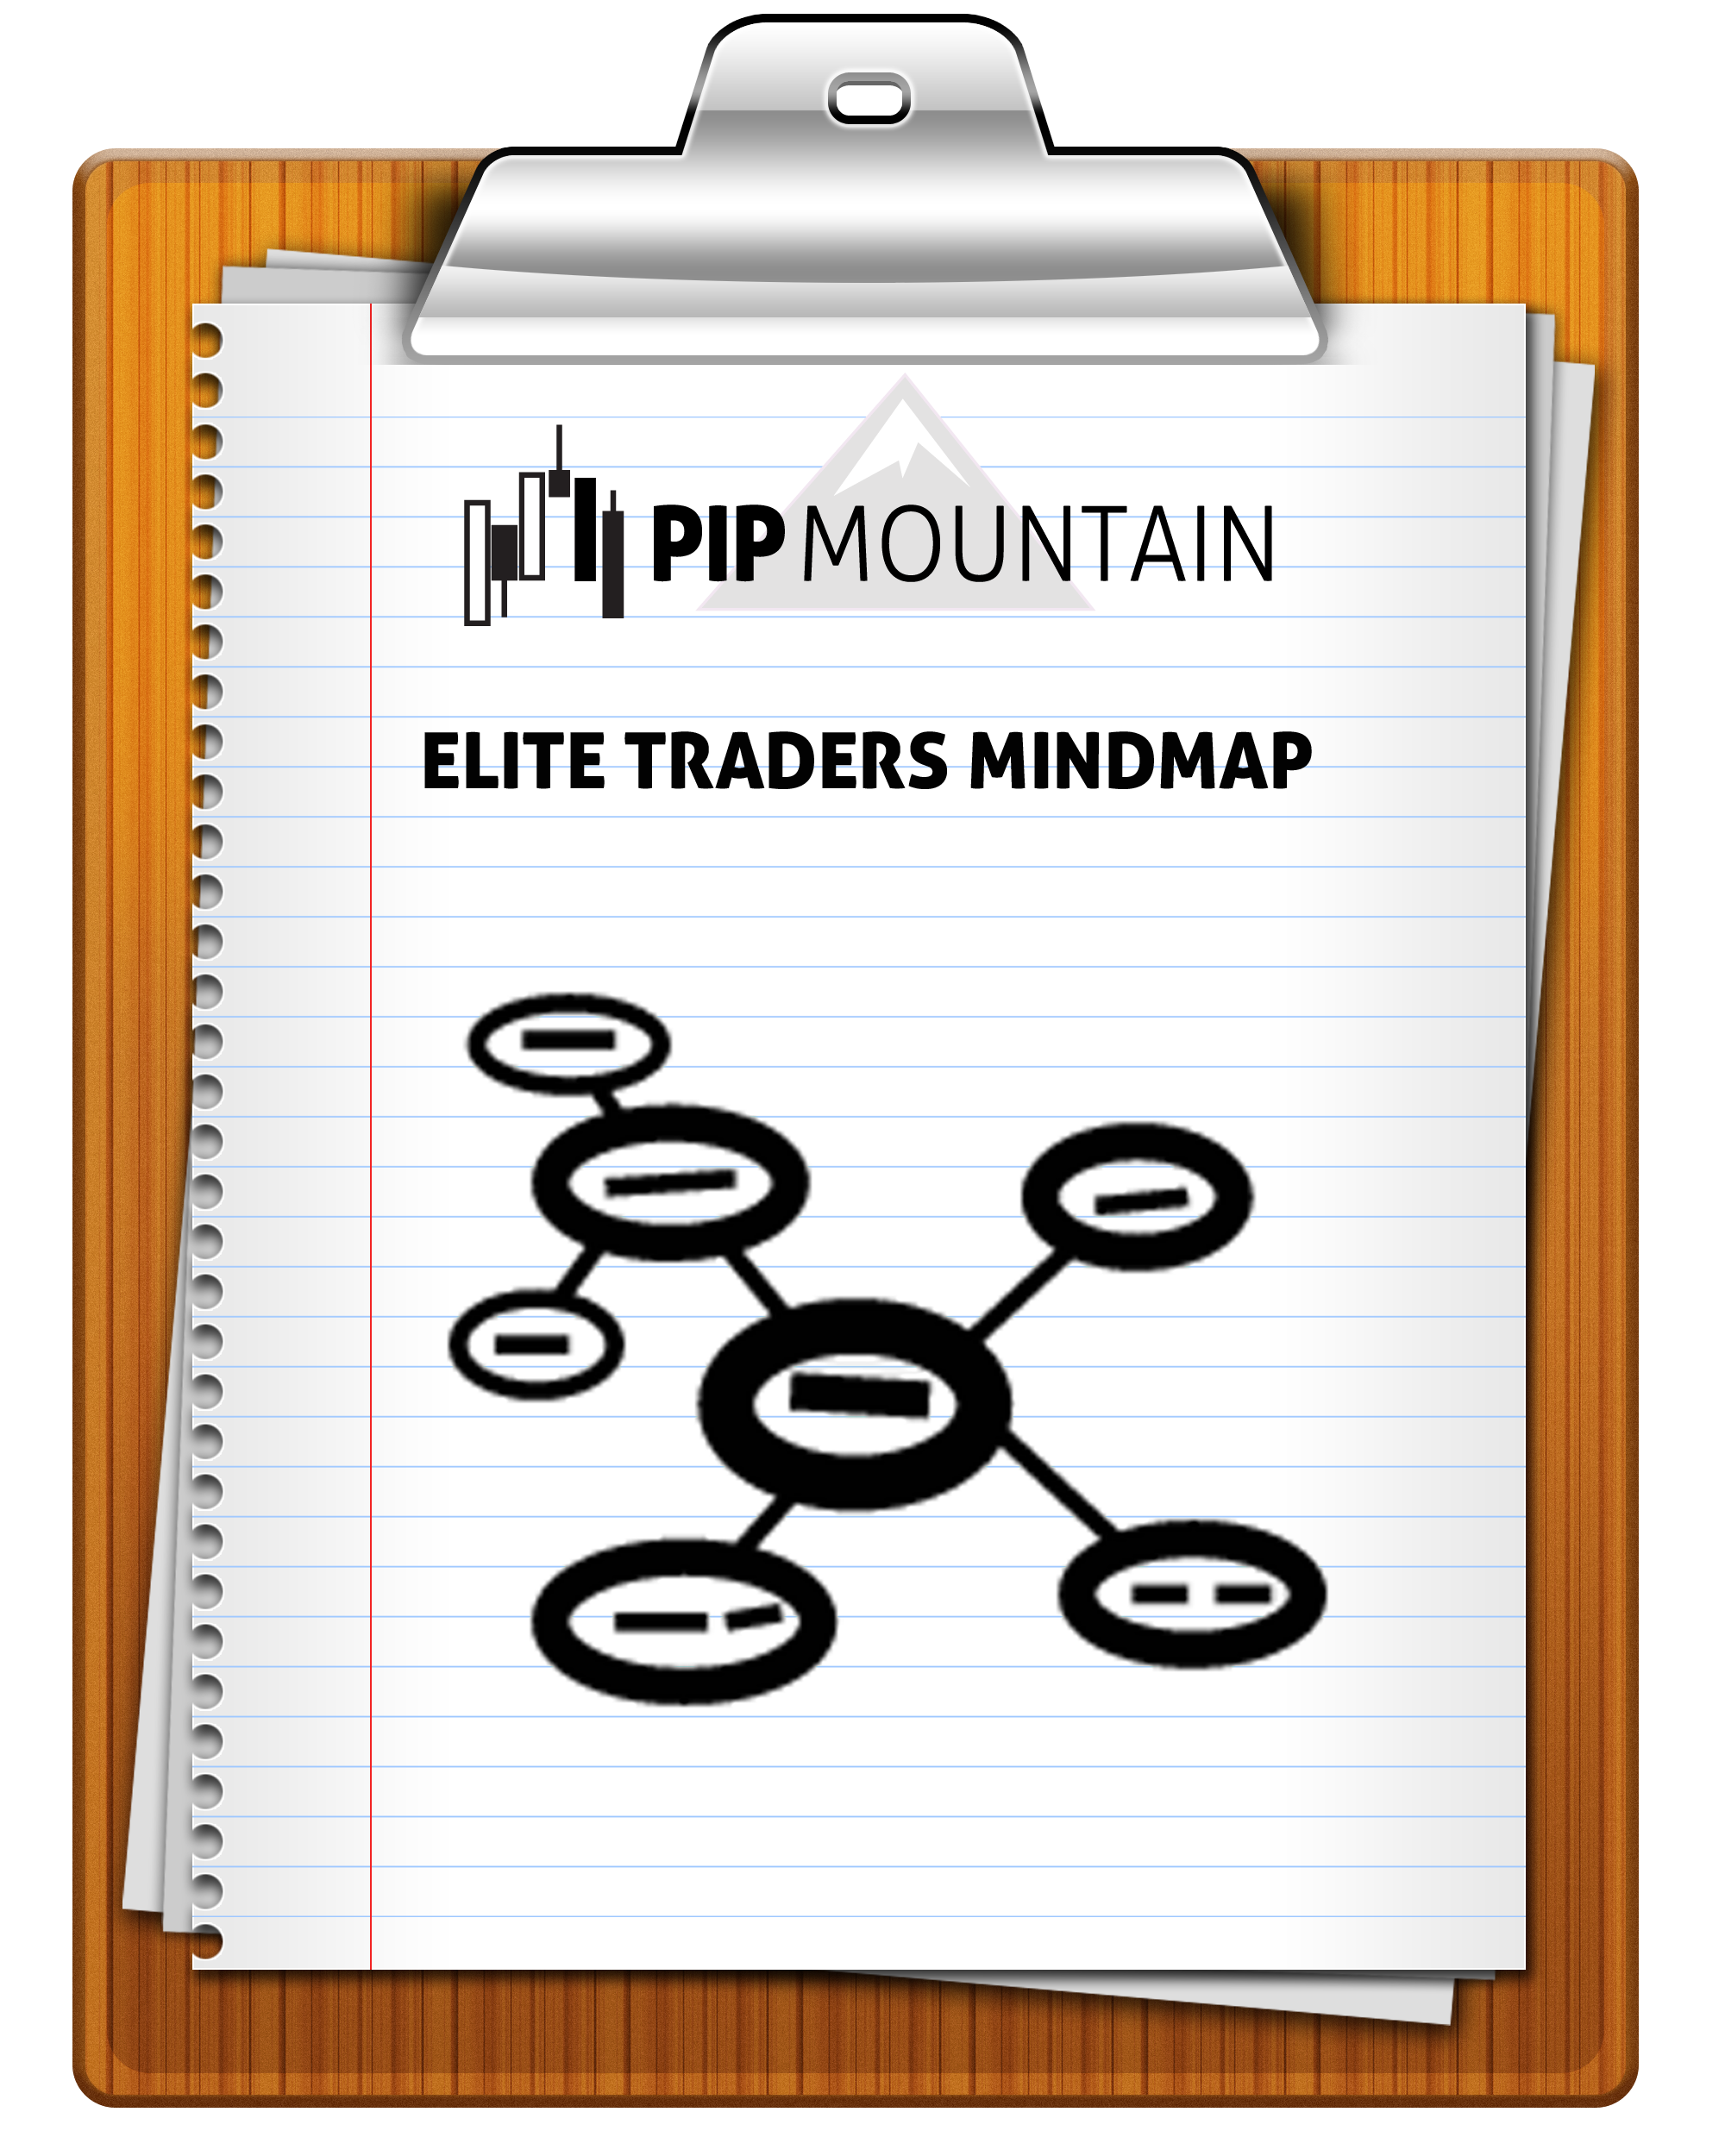 Elite Traders Mindmap